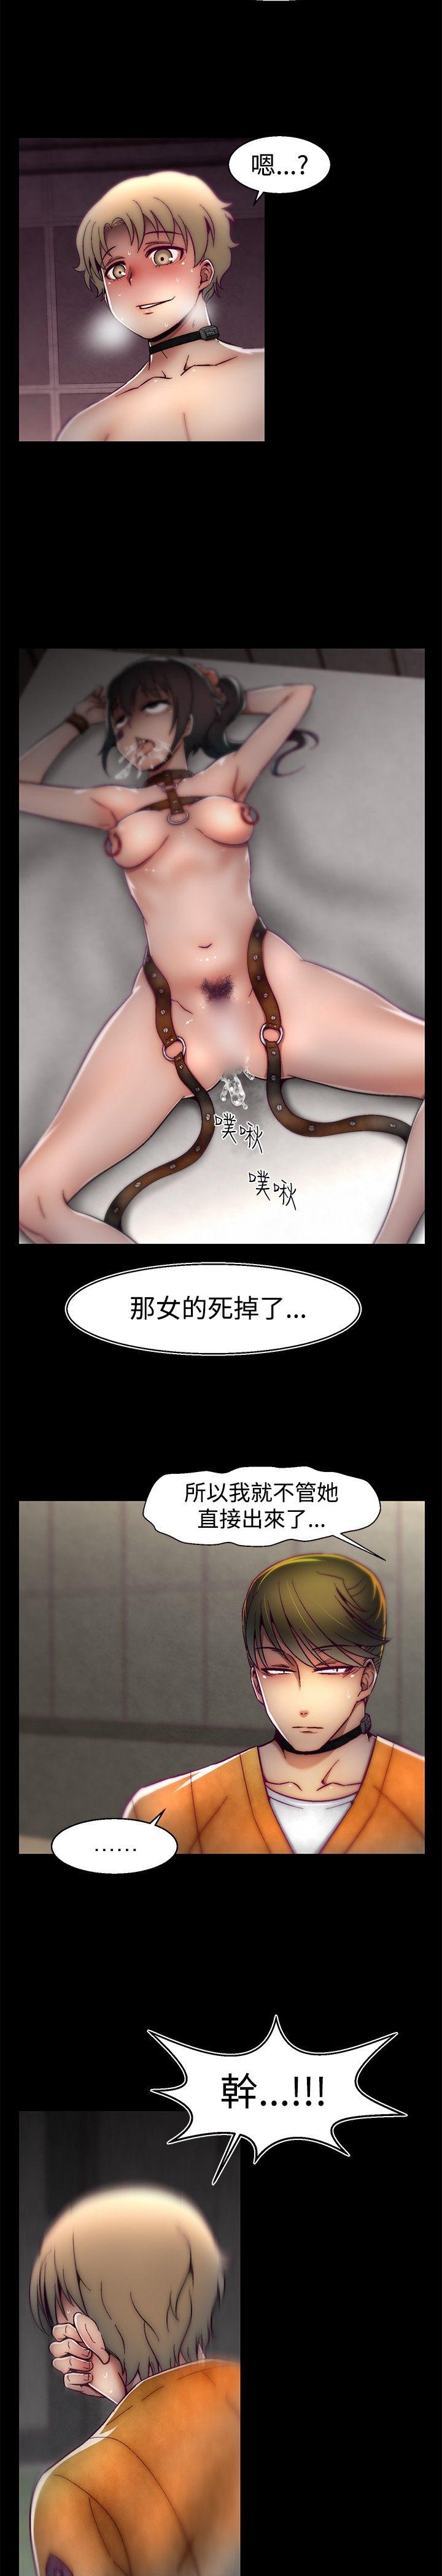 韩国污漫画 啪啪啪調教所 第25话 19